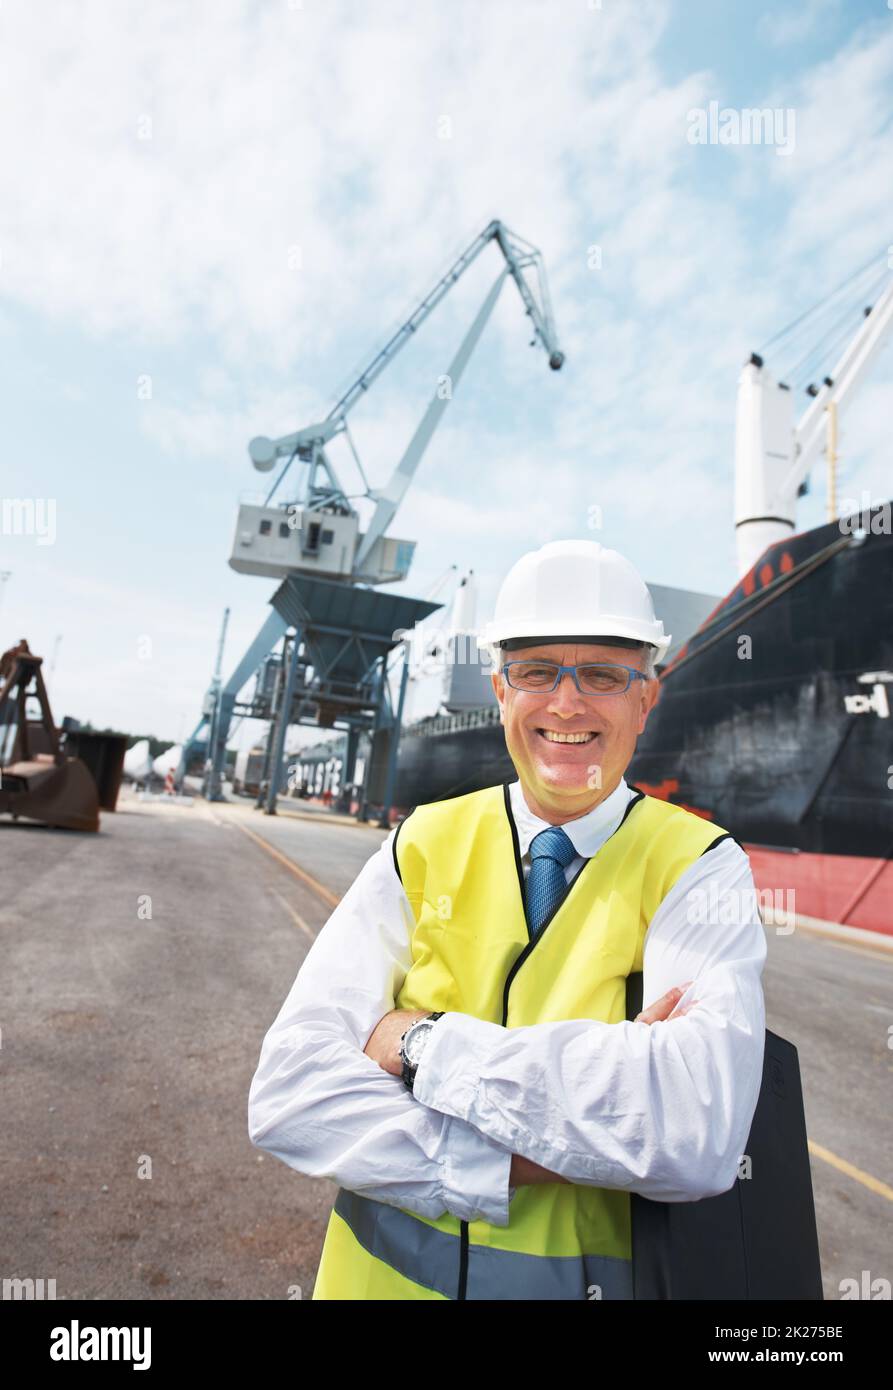 Meine Arbeit bringt mir enorme Freude. Porträt eines Hafenarbeiters, der inmitten der Schifffahrt am Hafen steht. Stockfoto